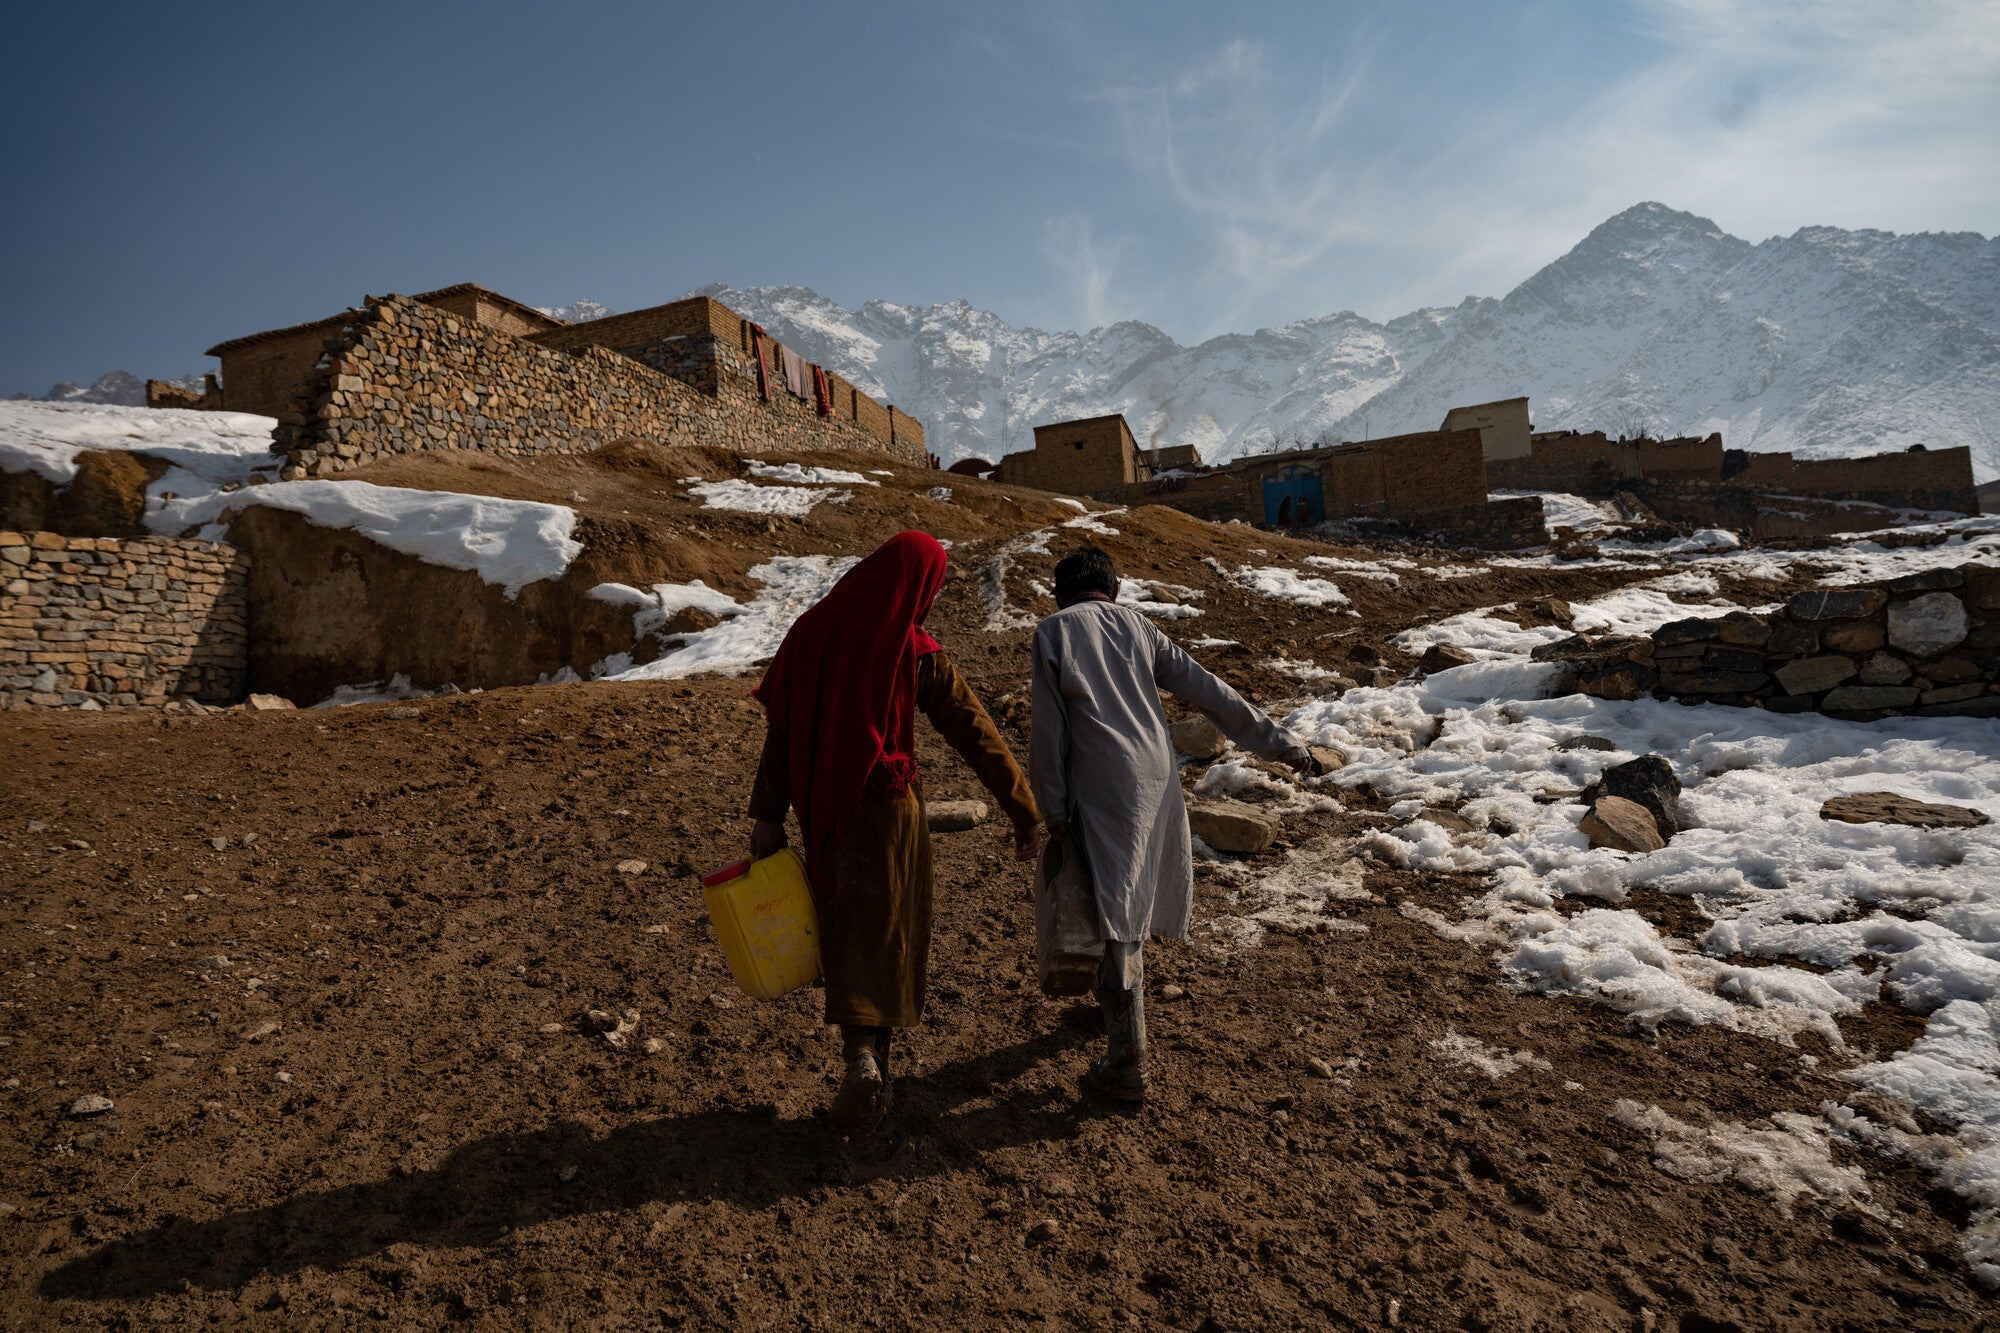 Temperatures can drop below -15C in Afghanistan’s harsh winters